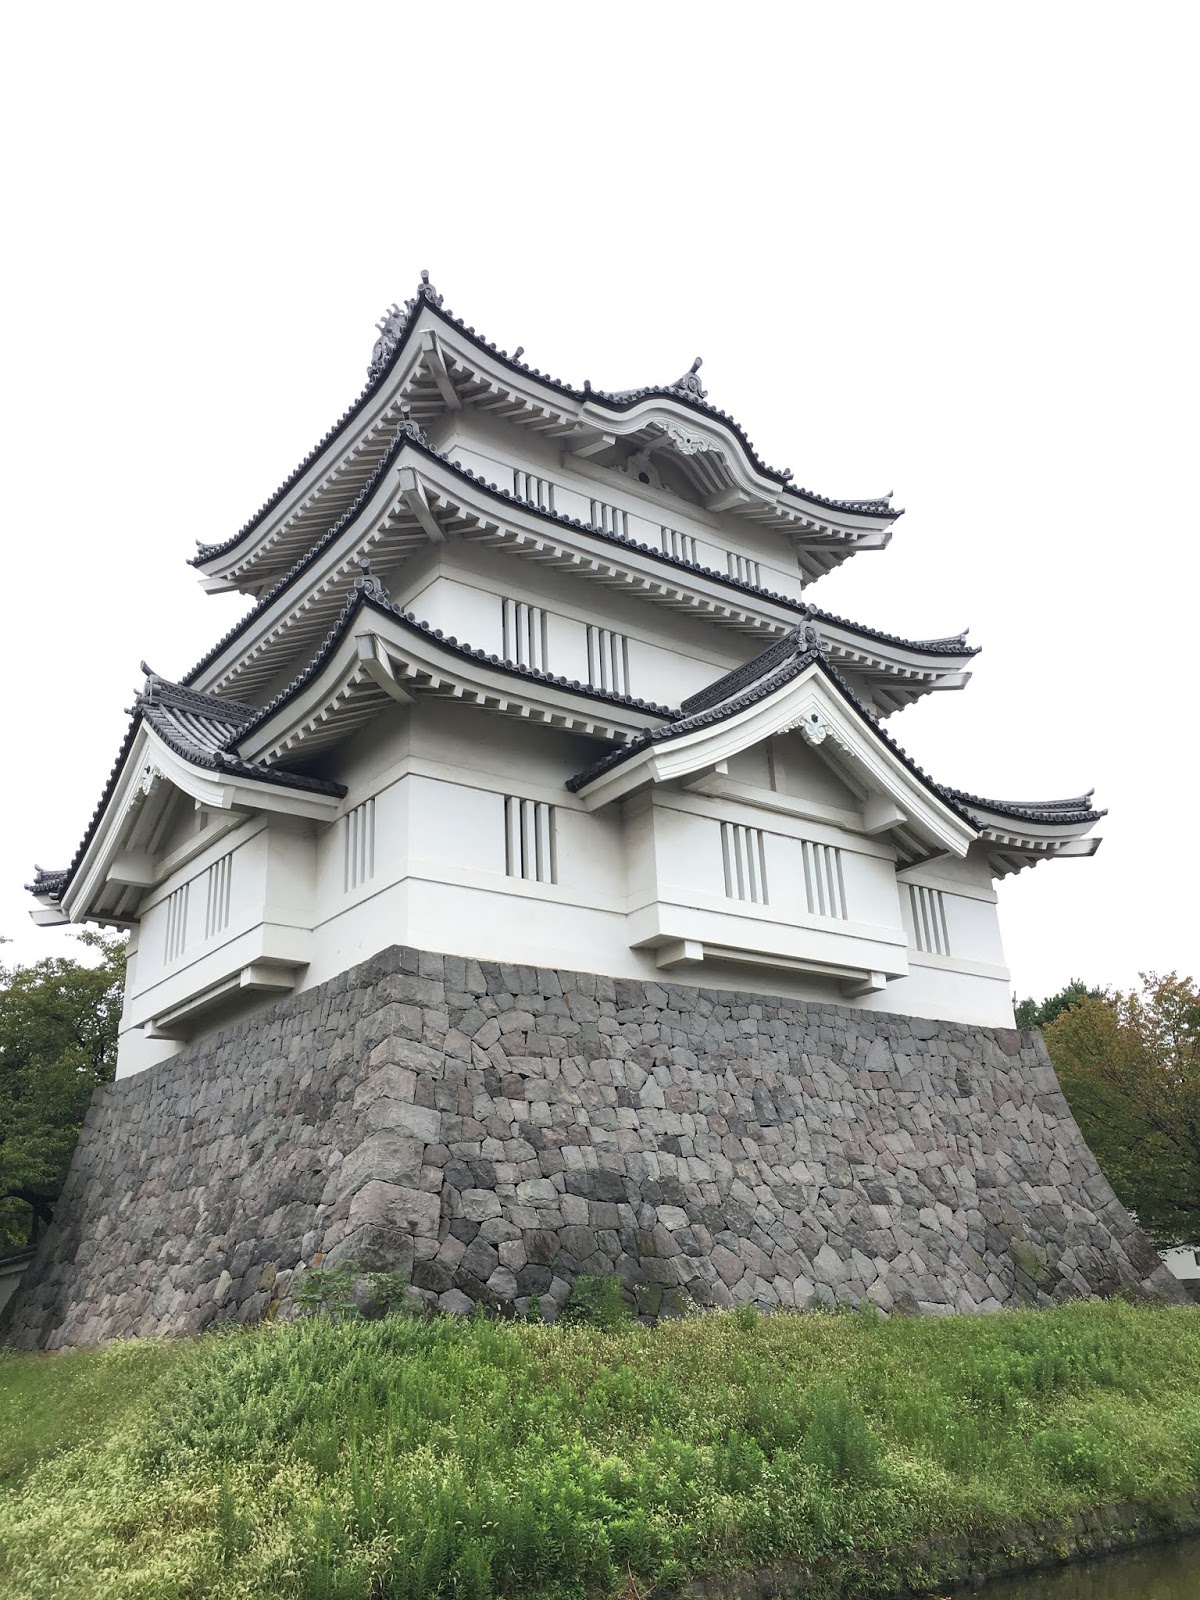 日本史專欄 石田三成的忍城之戰 のぼうの城 的舞台背後